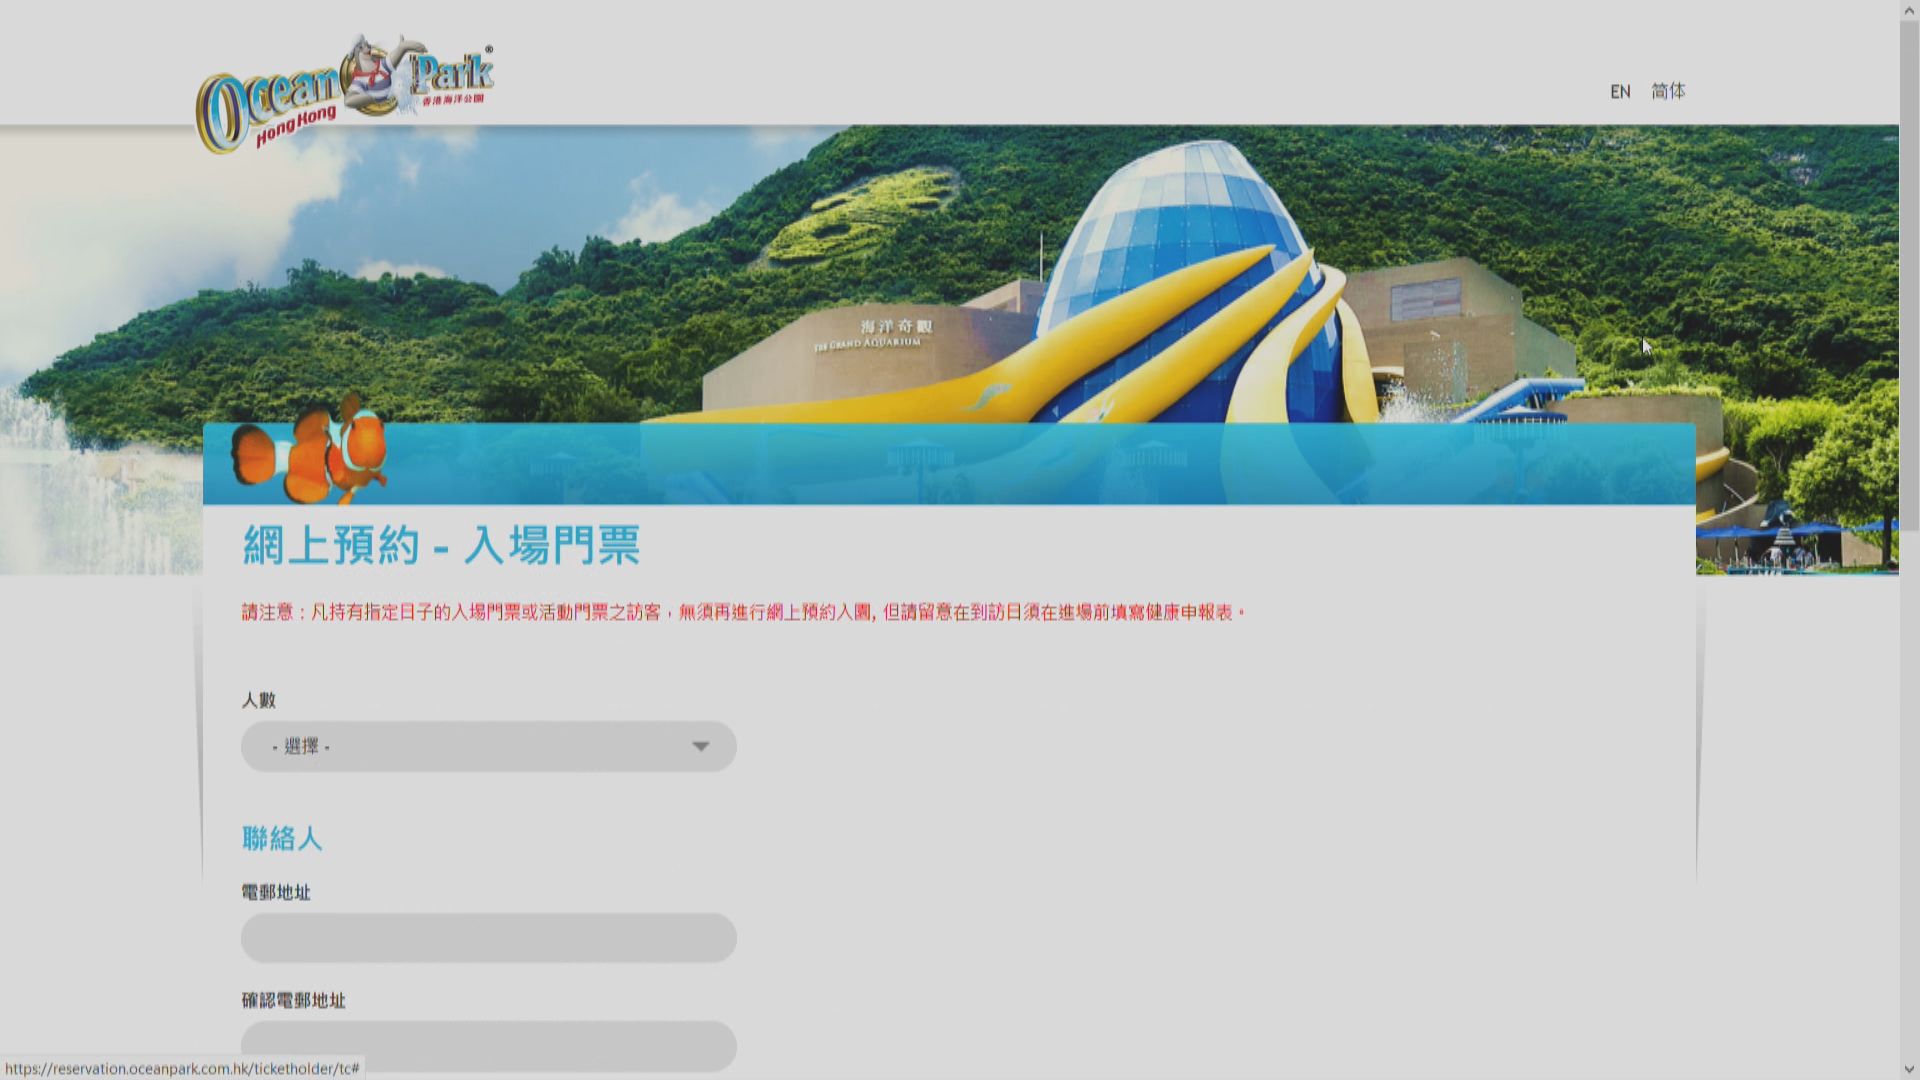 海洋公園接受網上預約　網頁顯示系統繁忙